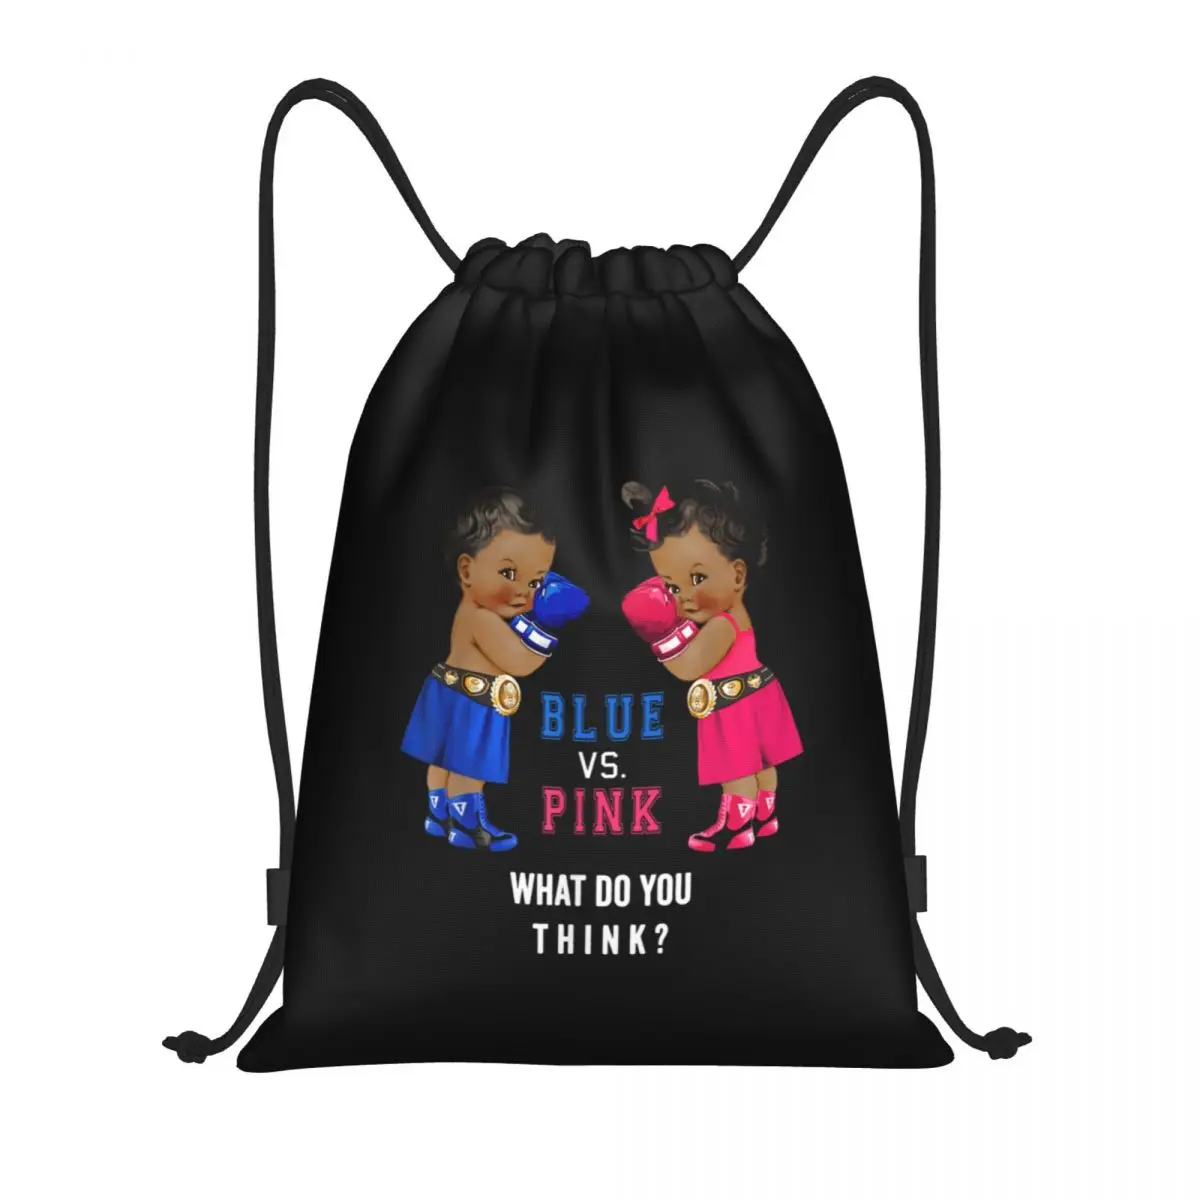 Этнические синие и розовые боксерские сумки для младенцев, раскрывающие пол, сумки на т-образных завязках, спортивная сумка, очень легкая одежда